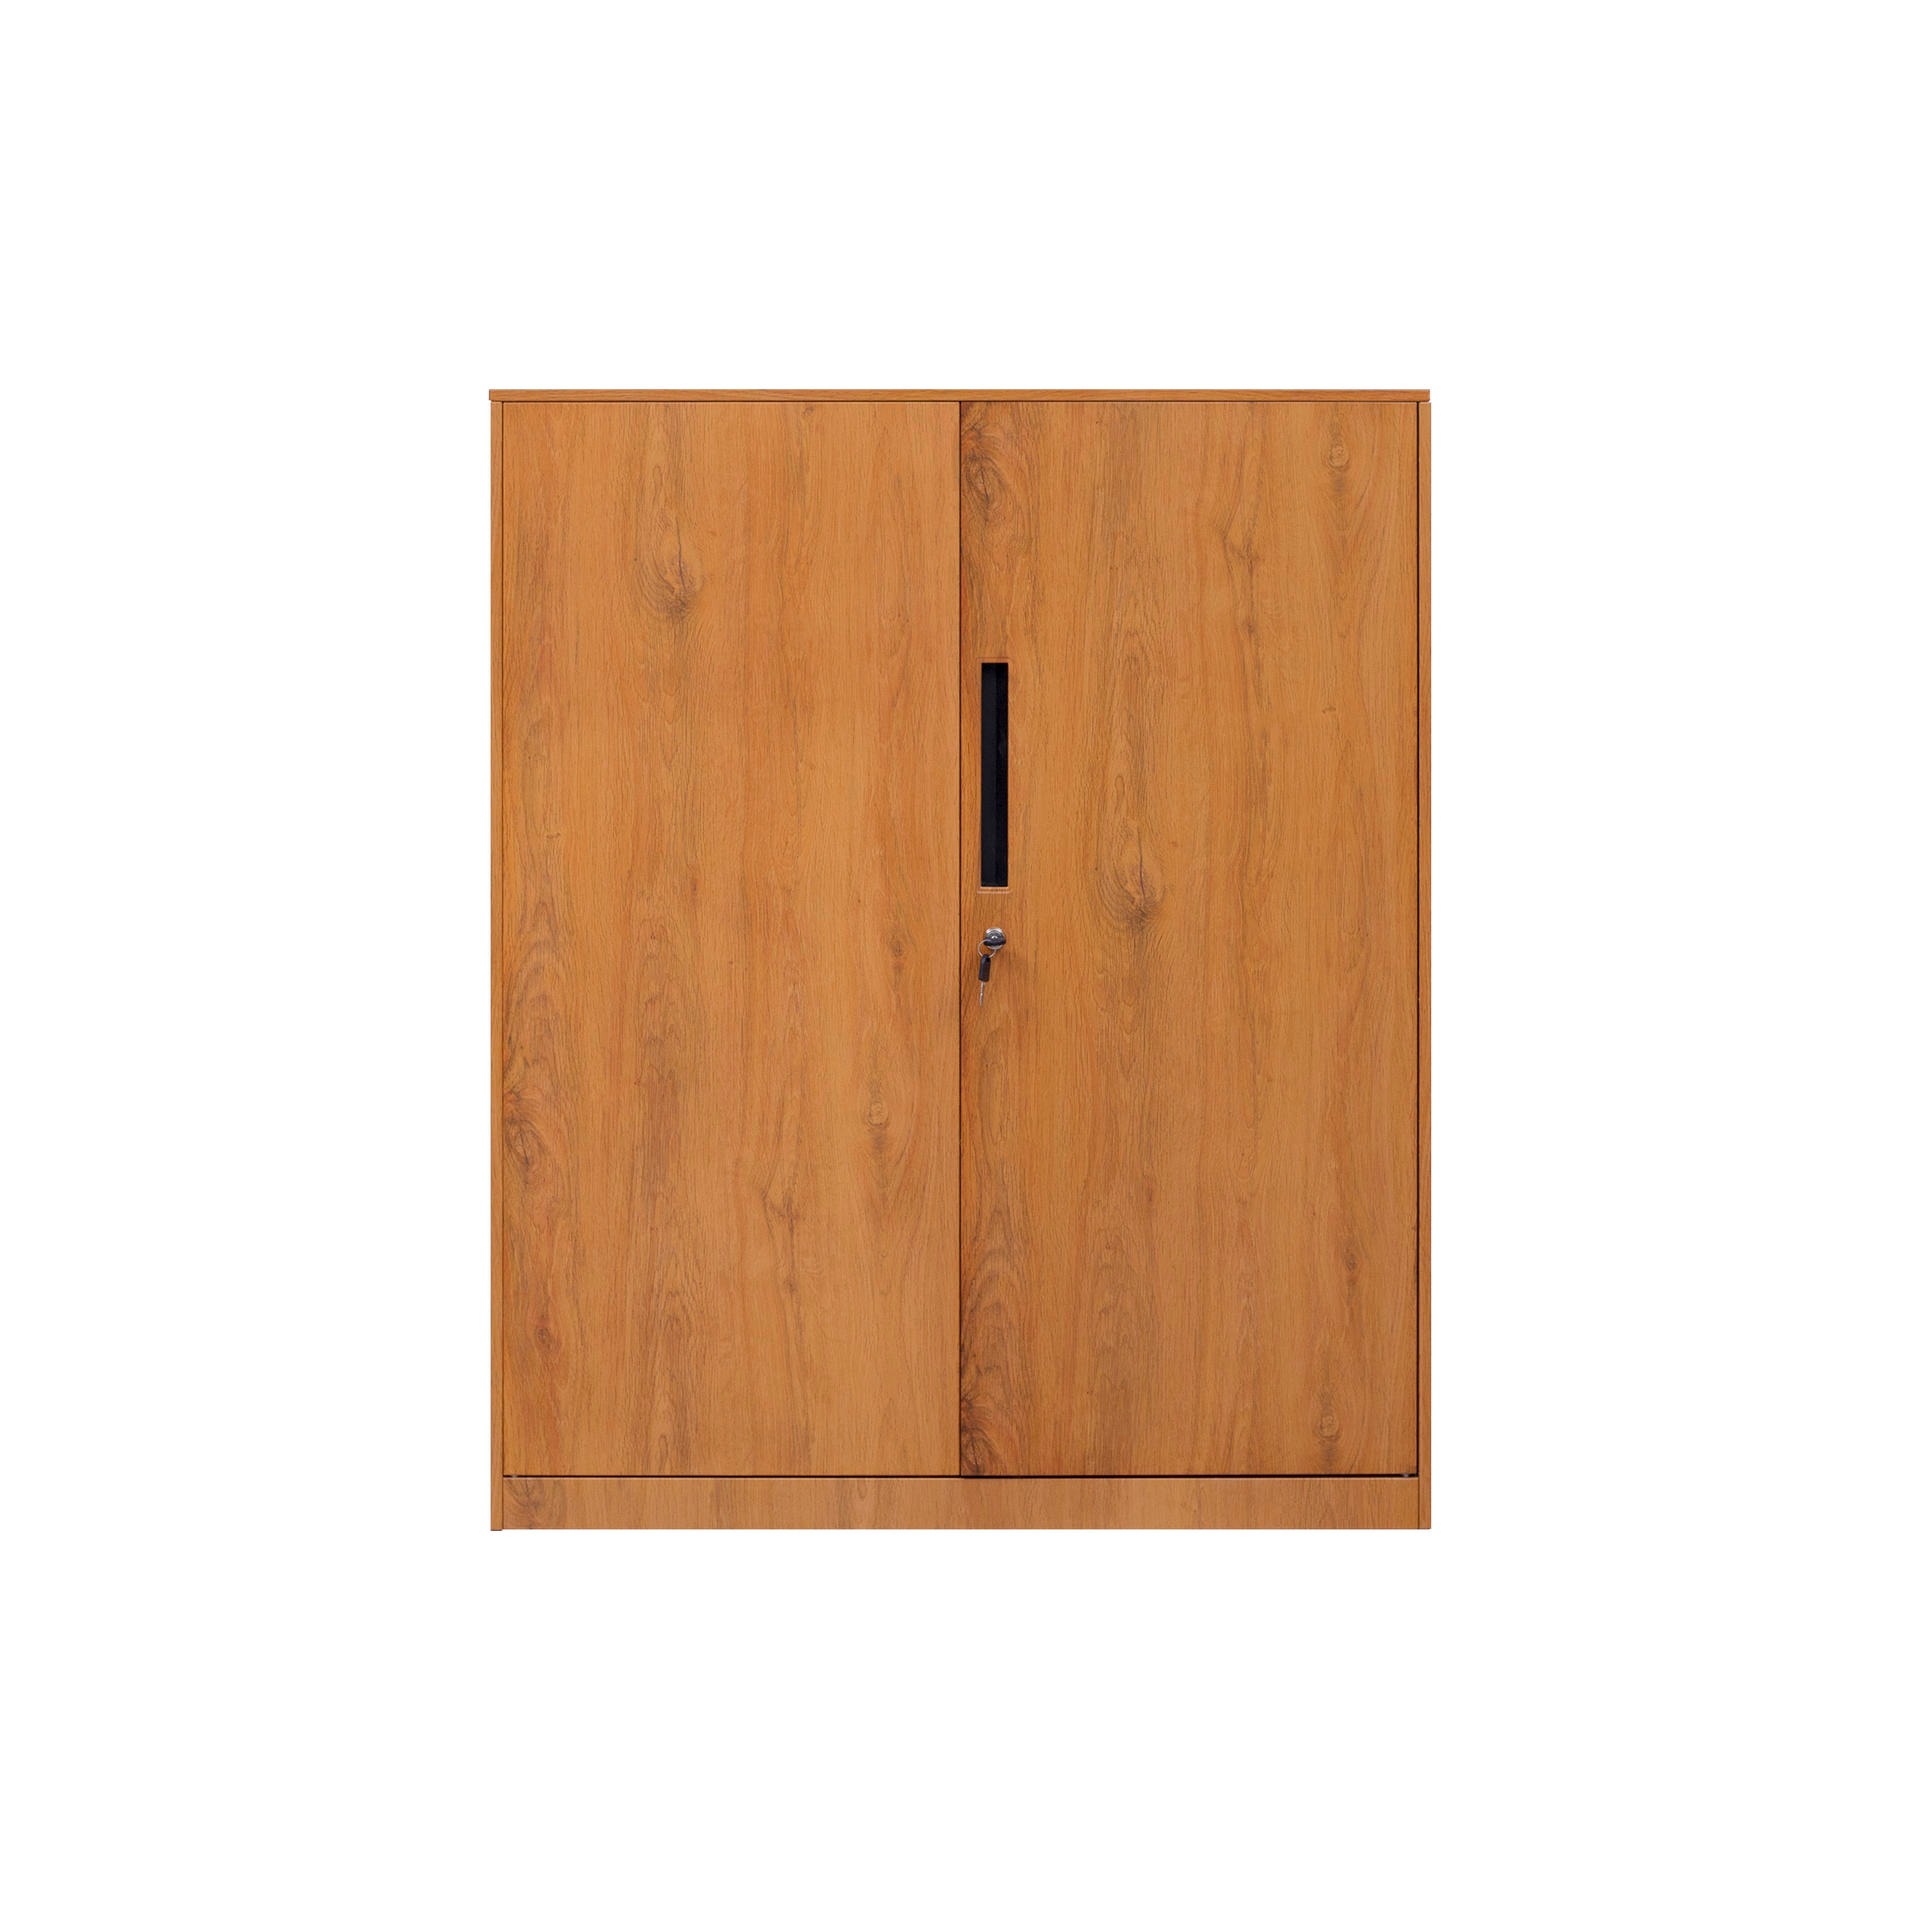 钢制木纹转印两门矮柜两抽钢制矮柜对开门矮柜两门储物柜可调节式两门矮柜图片